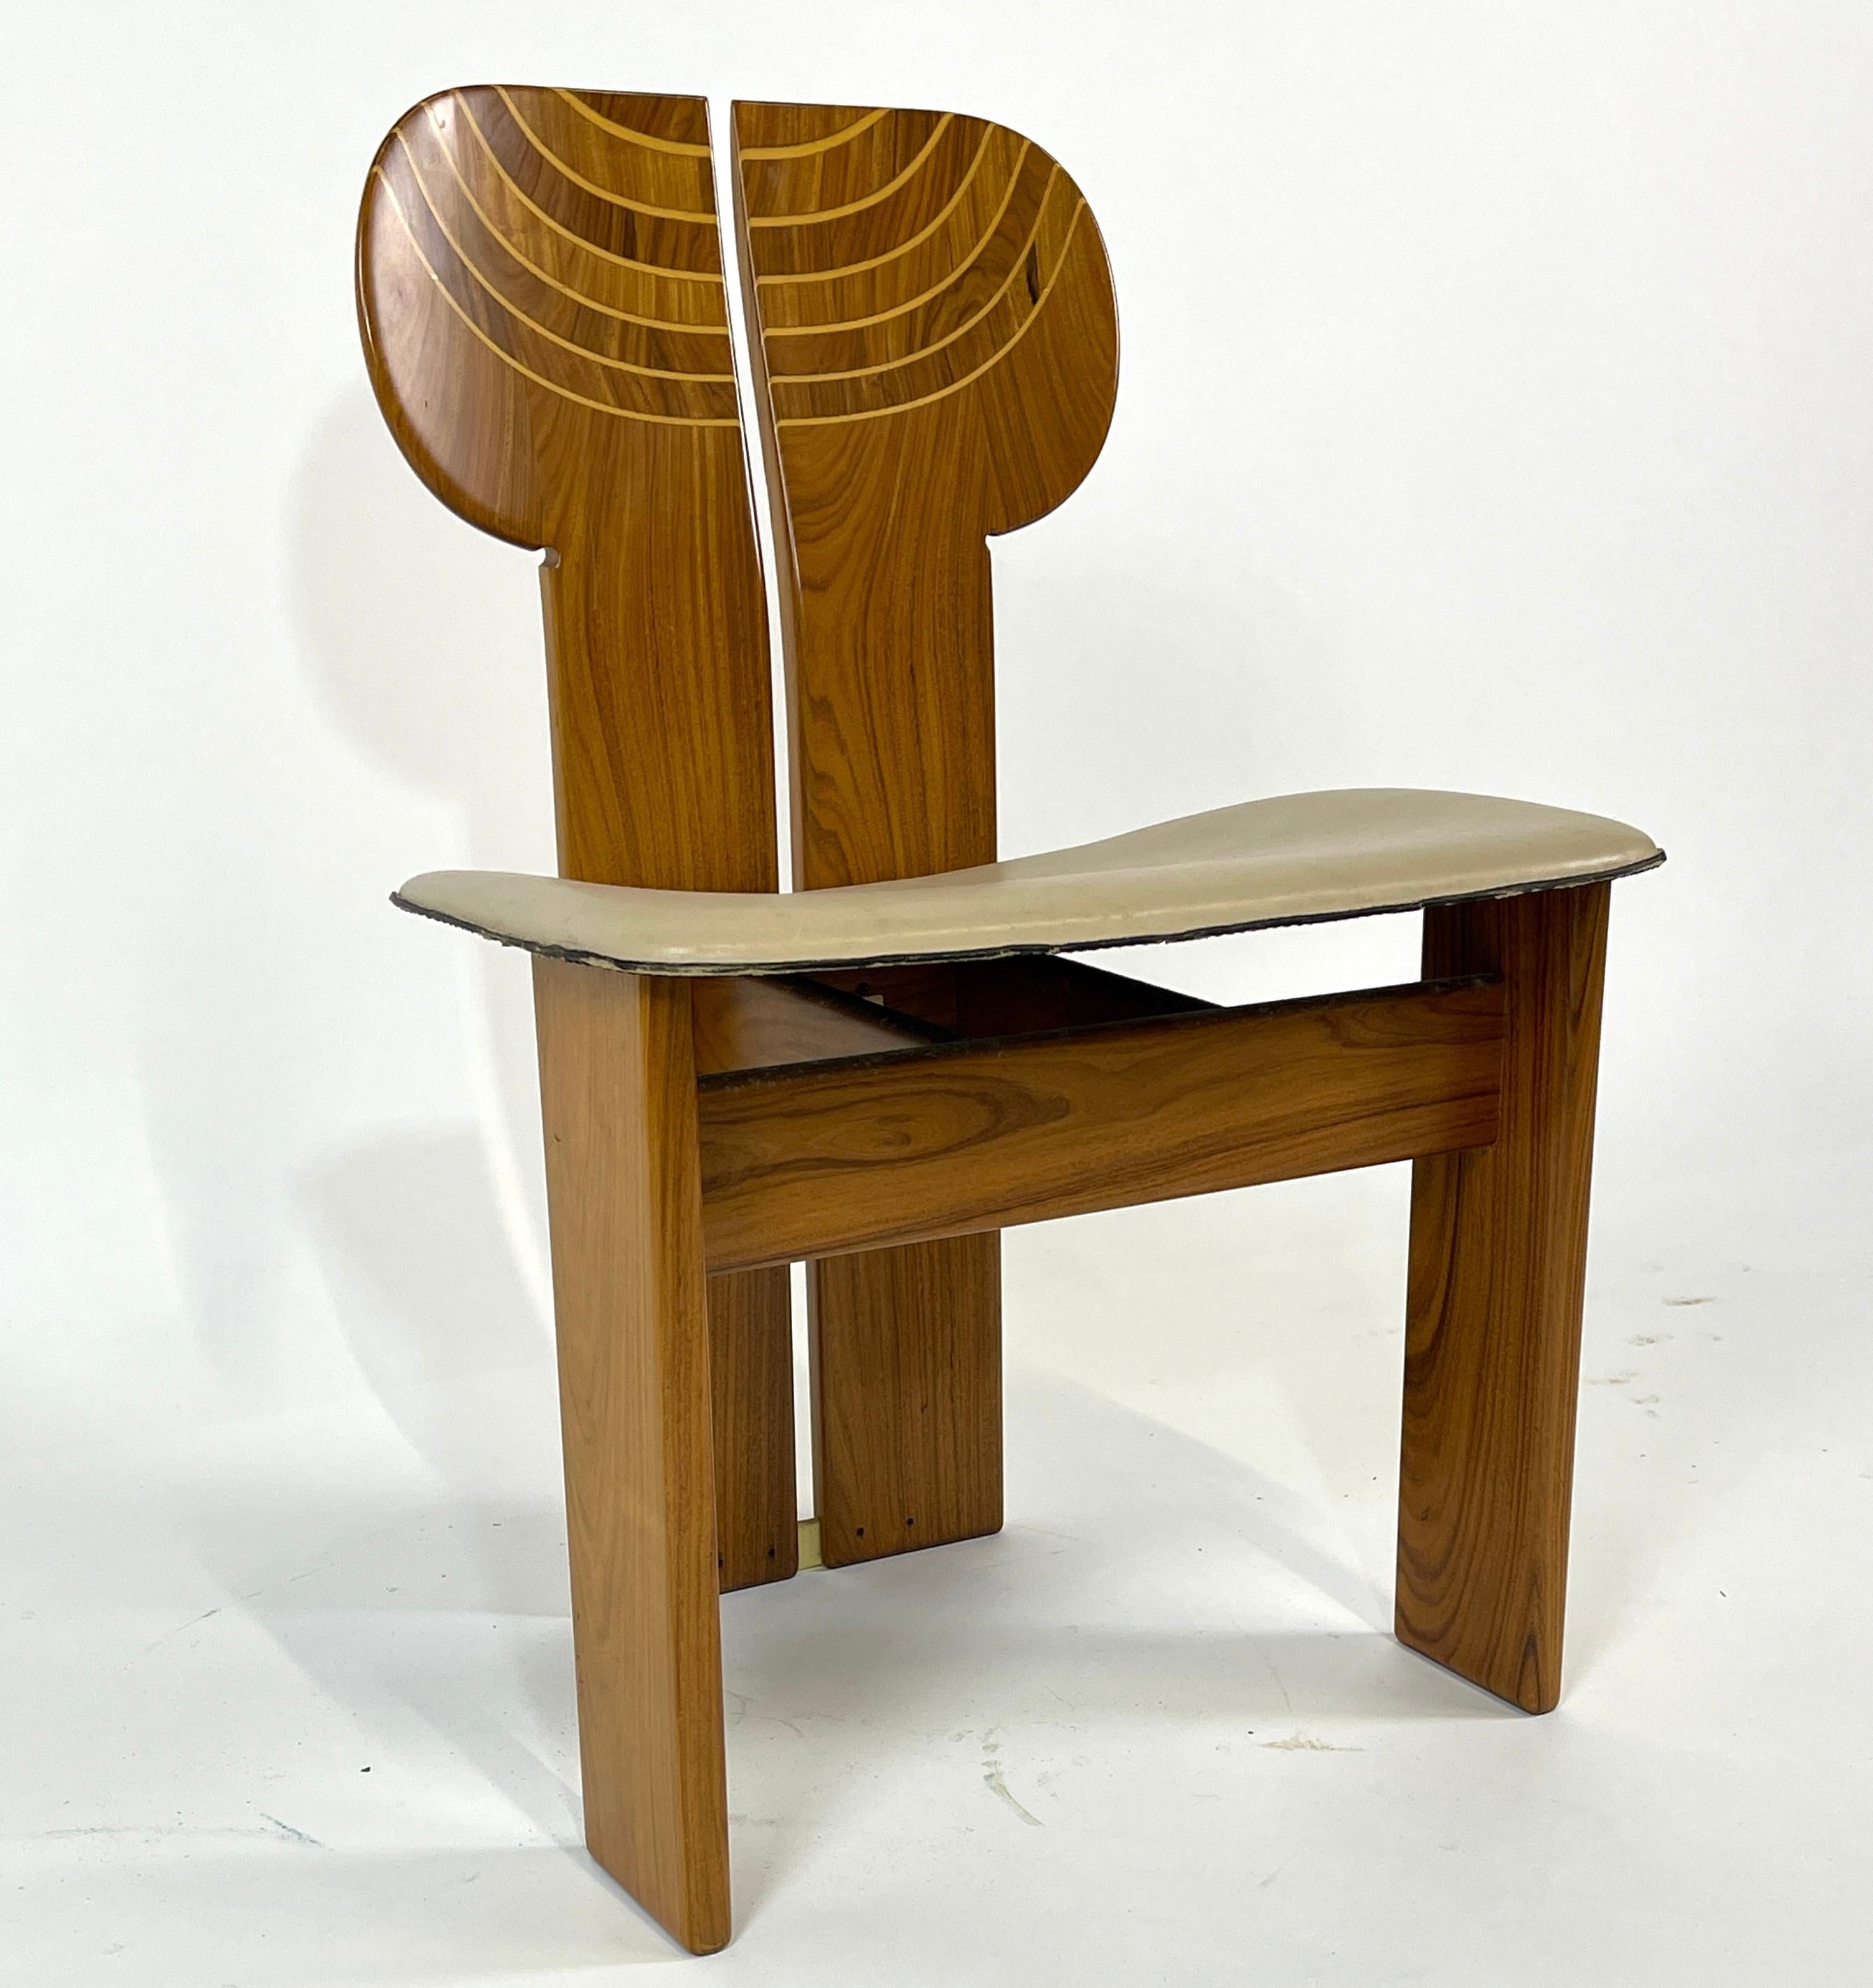 Italian Afra & Tobia Scarpa Artona Series 'Africa' Chairs Produced, Maxalto 4 Available